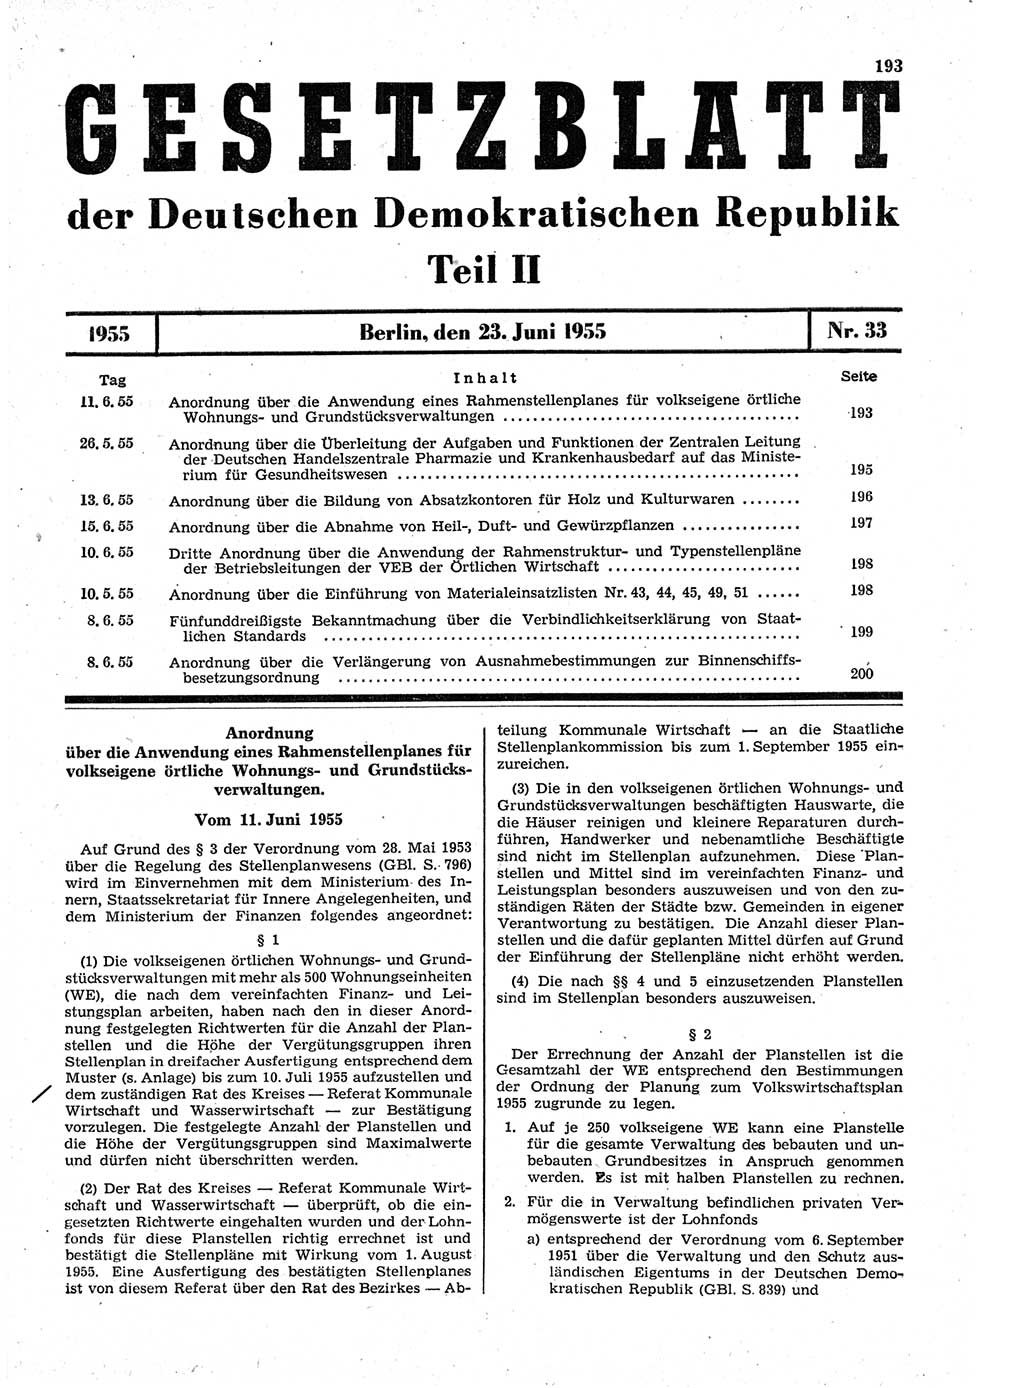 Gesetzblatt (GBl.) der Deutschen Demokratischen Republik (DDR) Teil ⅠⅠ 1955, Seite 193 (GBl. DDR ⅠⅠ 1955, S. 193)